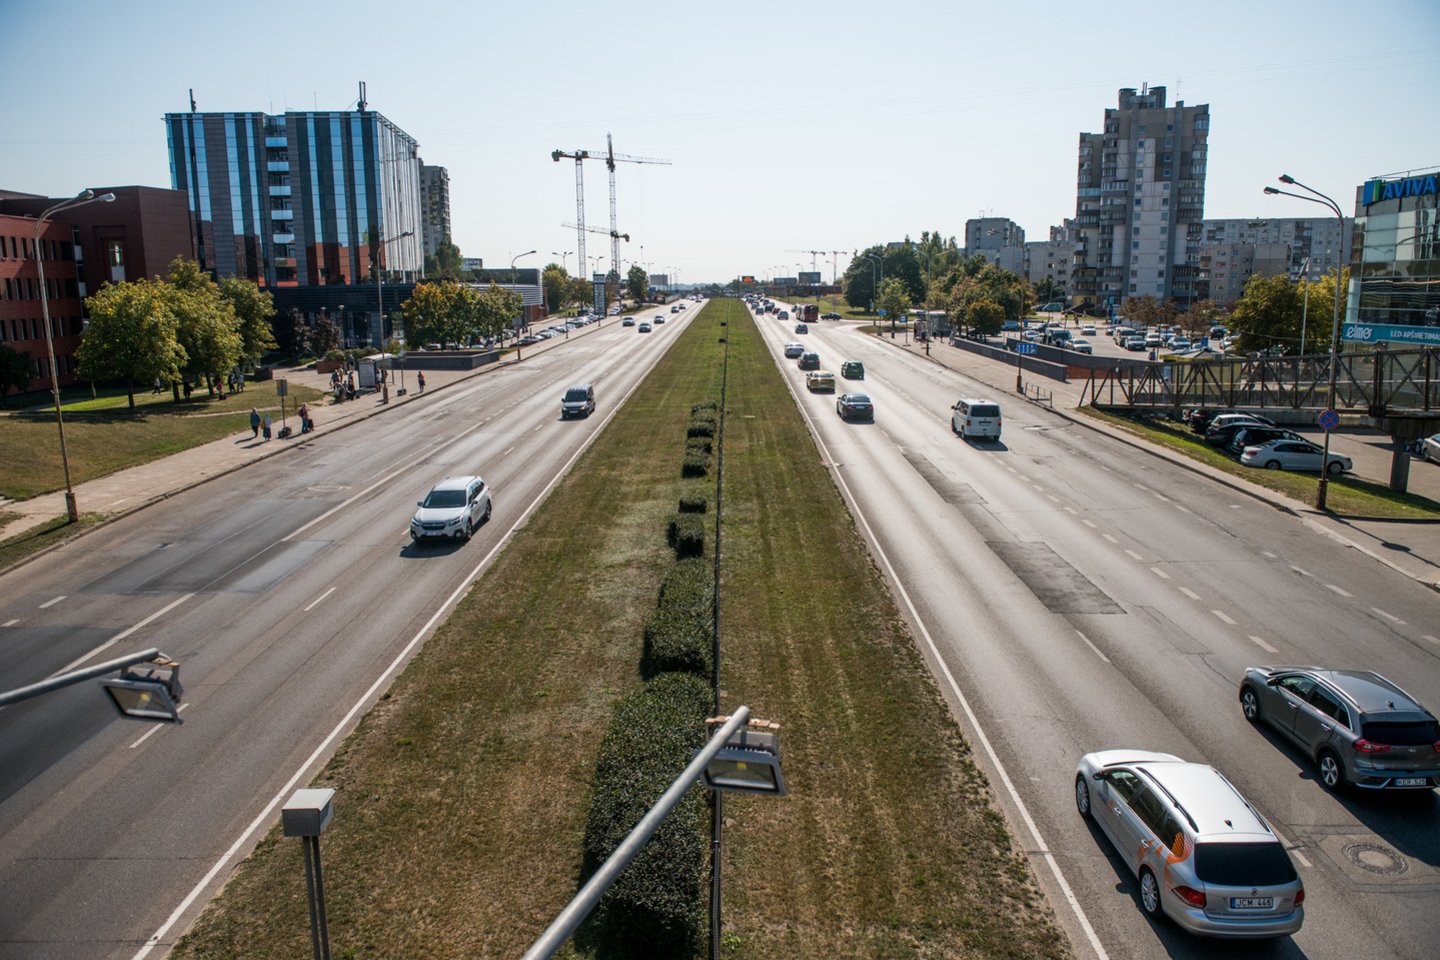  Vilniaus savivaldybės atstovai teigia, kad sostinėje veikia žalieji transporto koridoriai, tačiau realybėje jų teisingas veikimas priklauso nuo labai daug faktorių.<br> D.Umbraso nuotr.